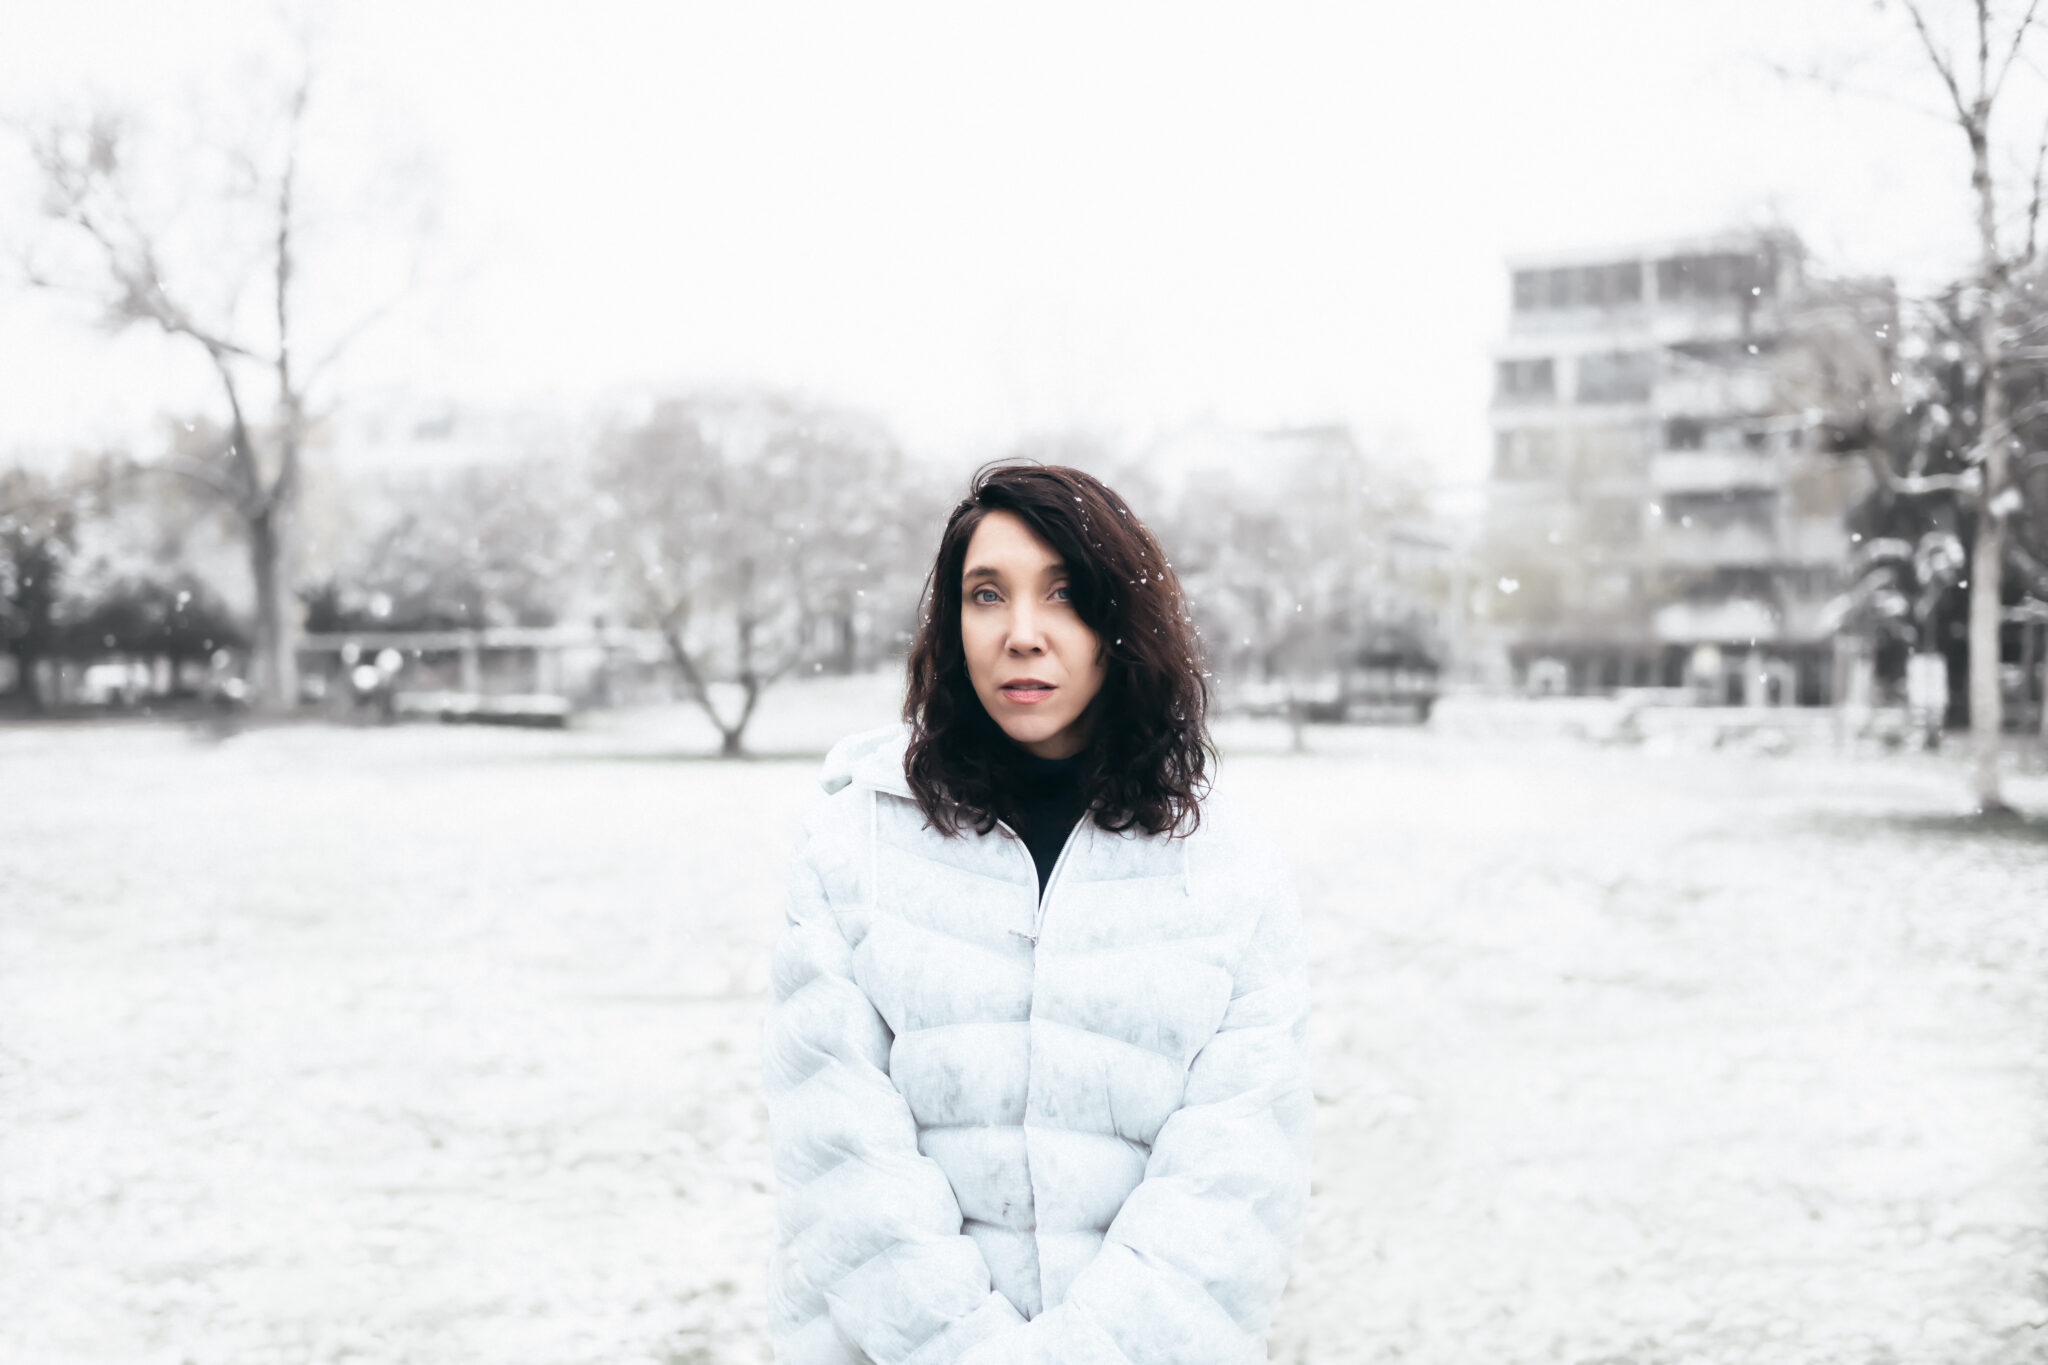 Irina Kastrinidis portrait in winter